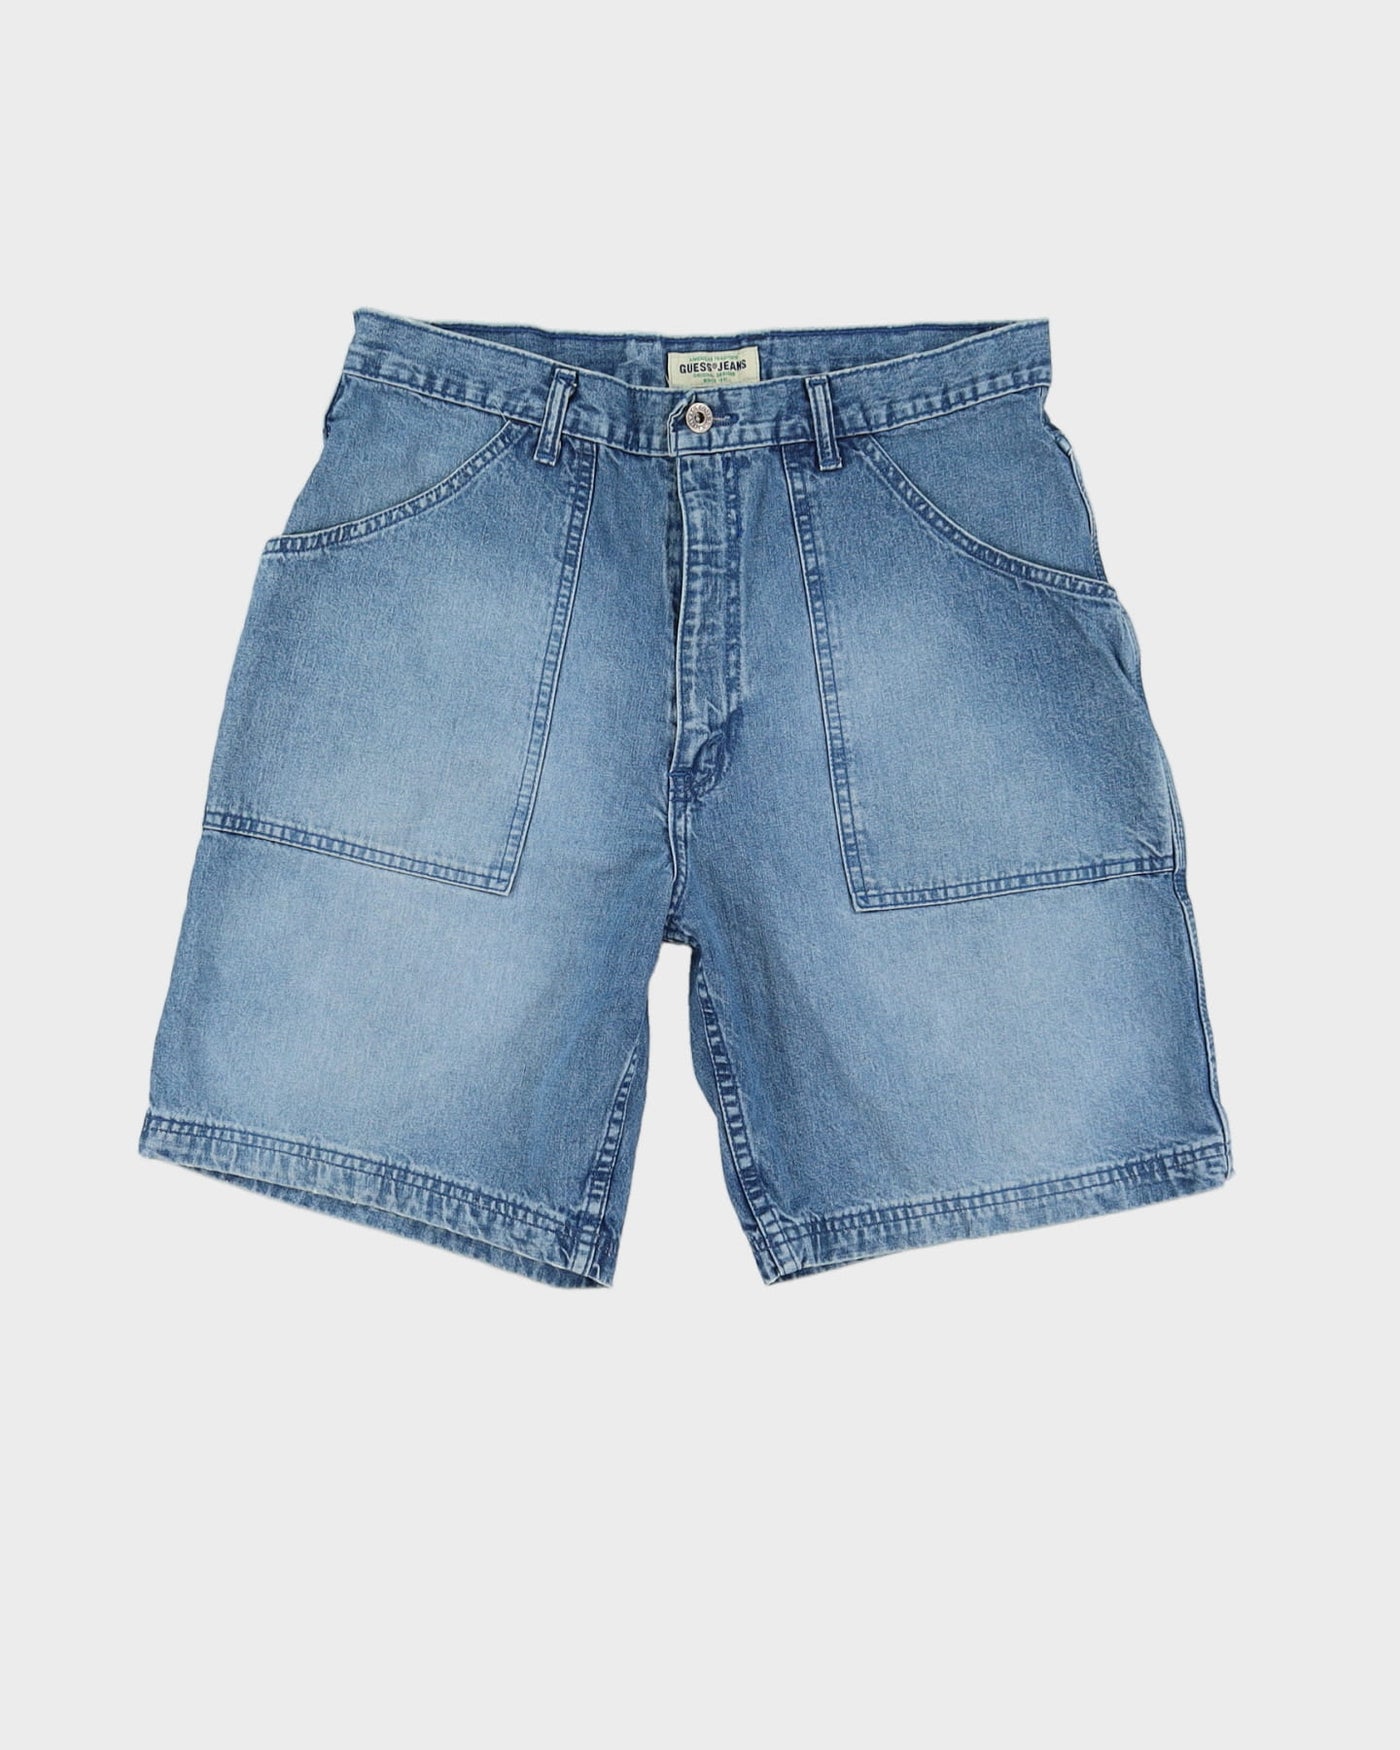 Vintage 90s Guess Blue Denim Shorts - W32